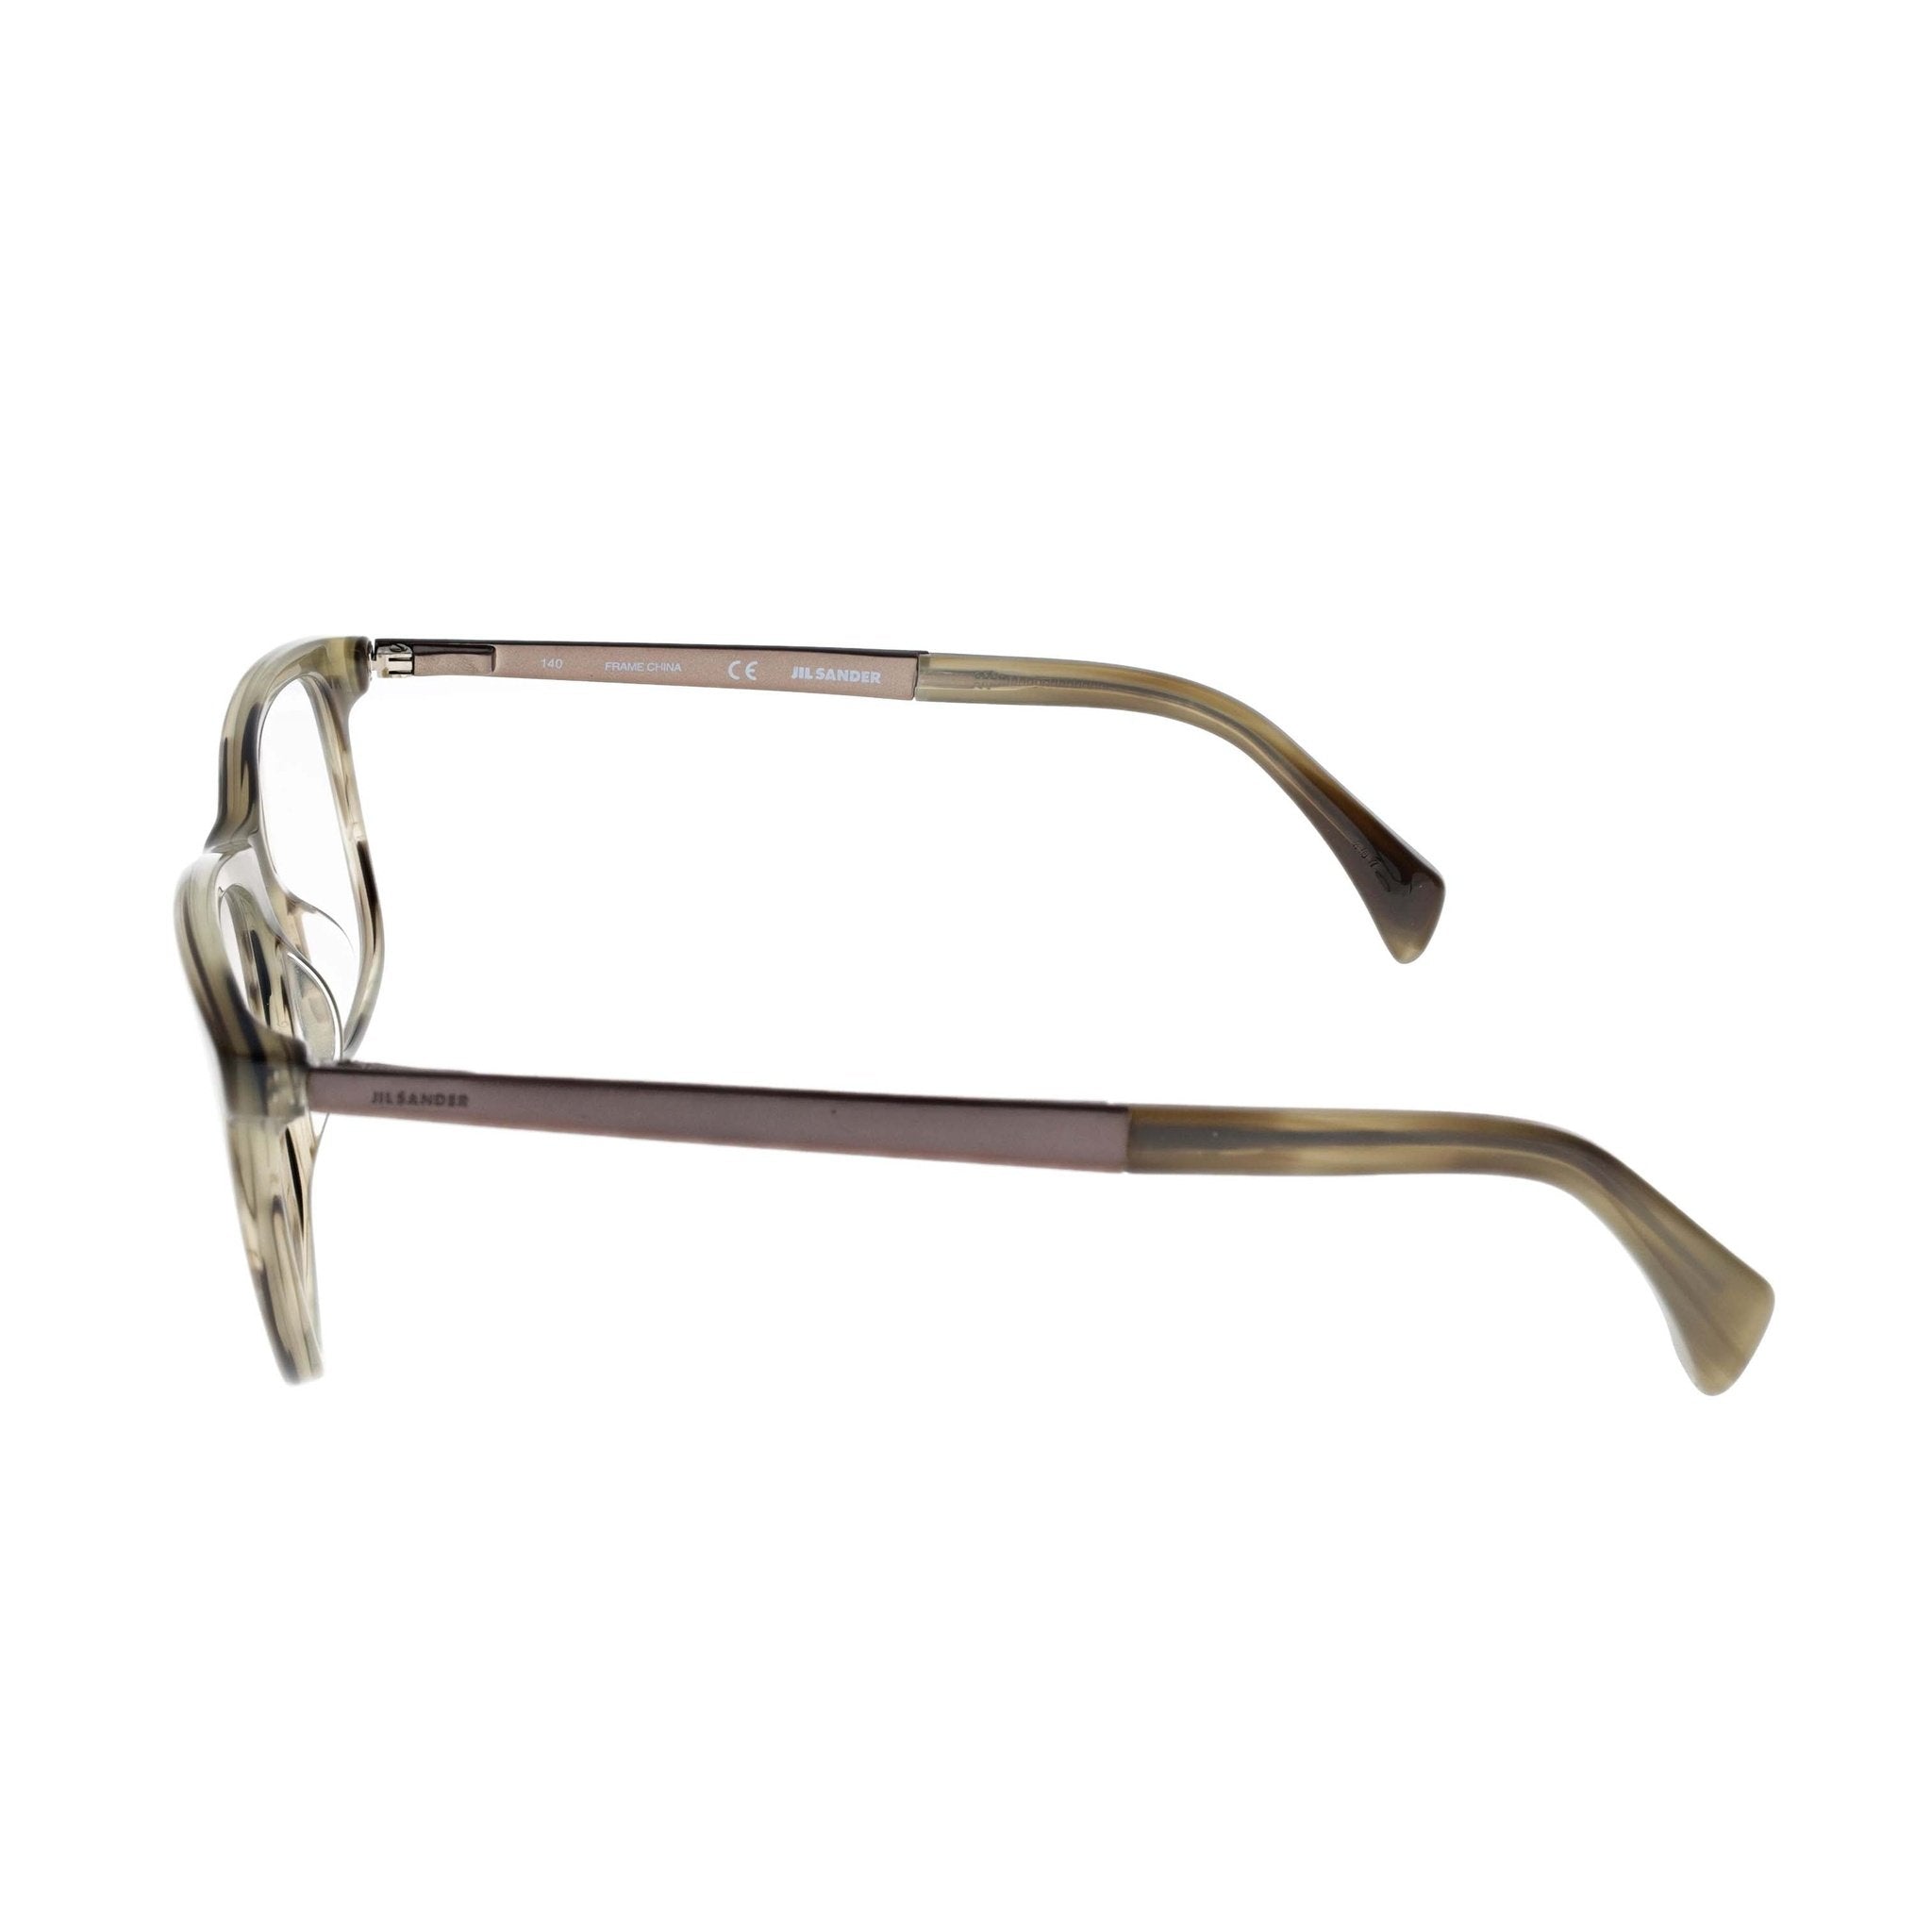 Jil Sander Eyeglasses - JS2732